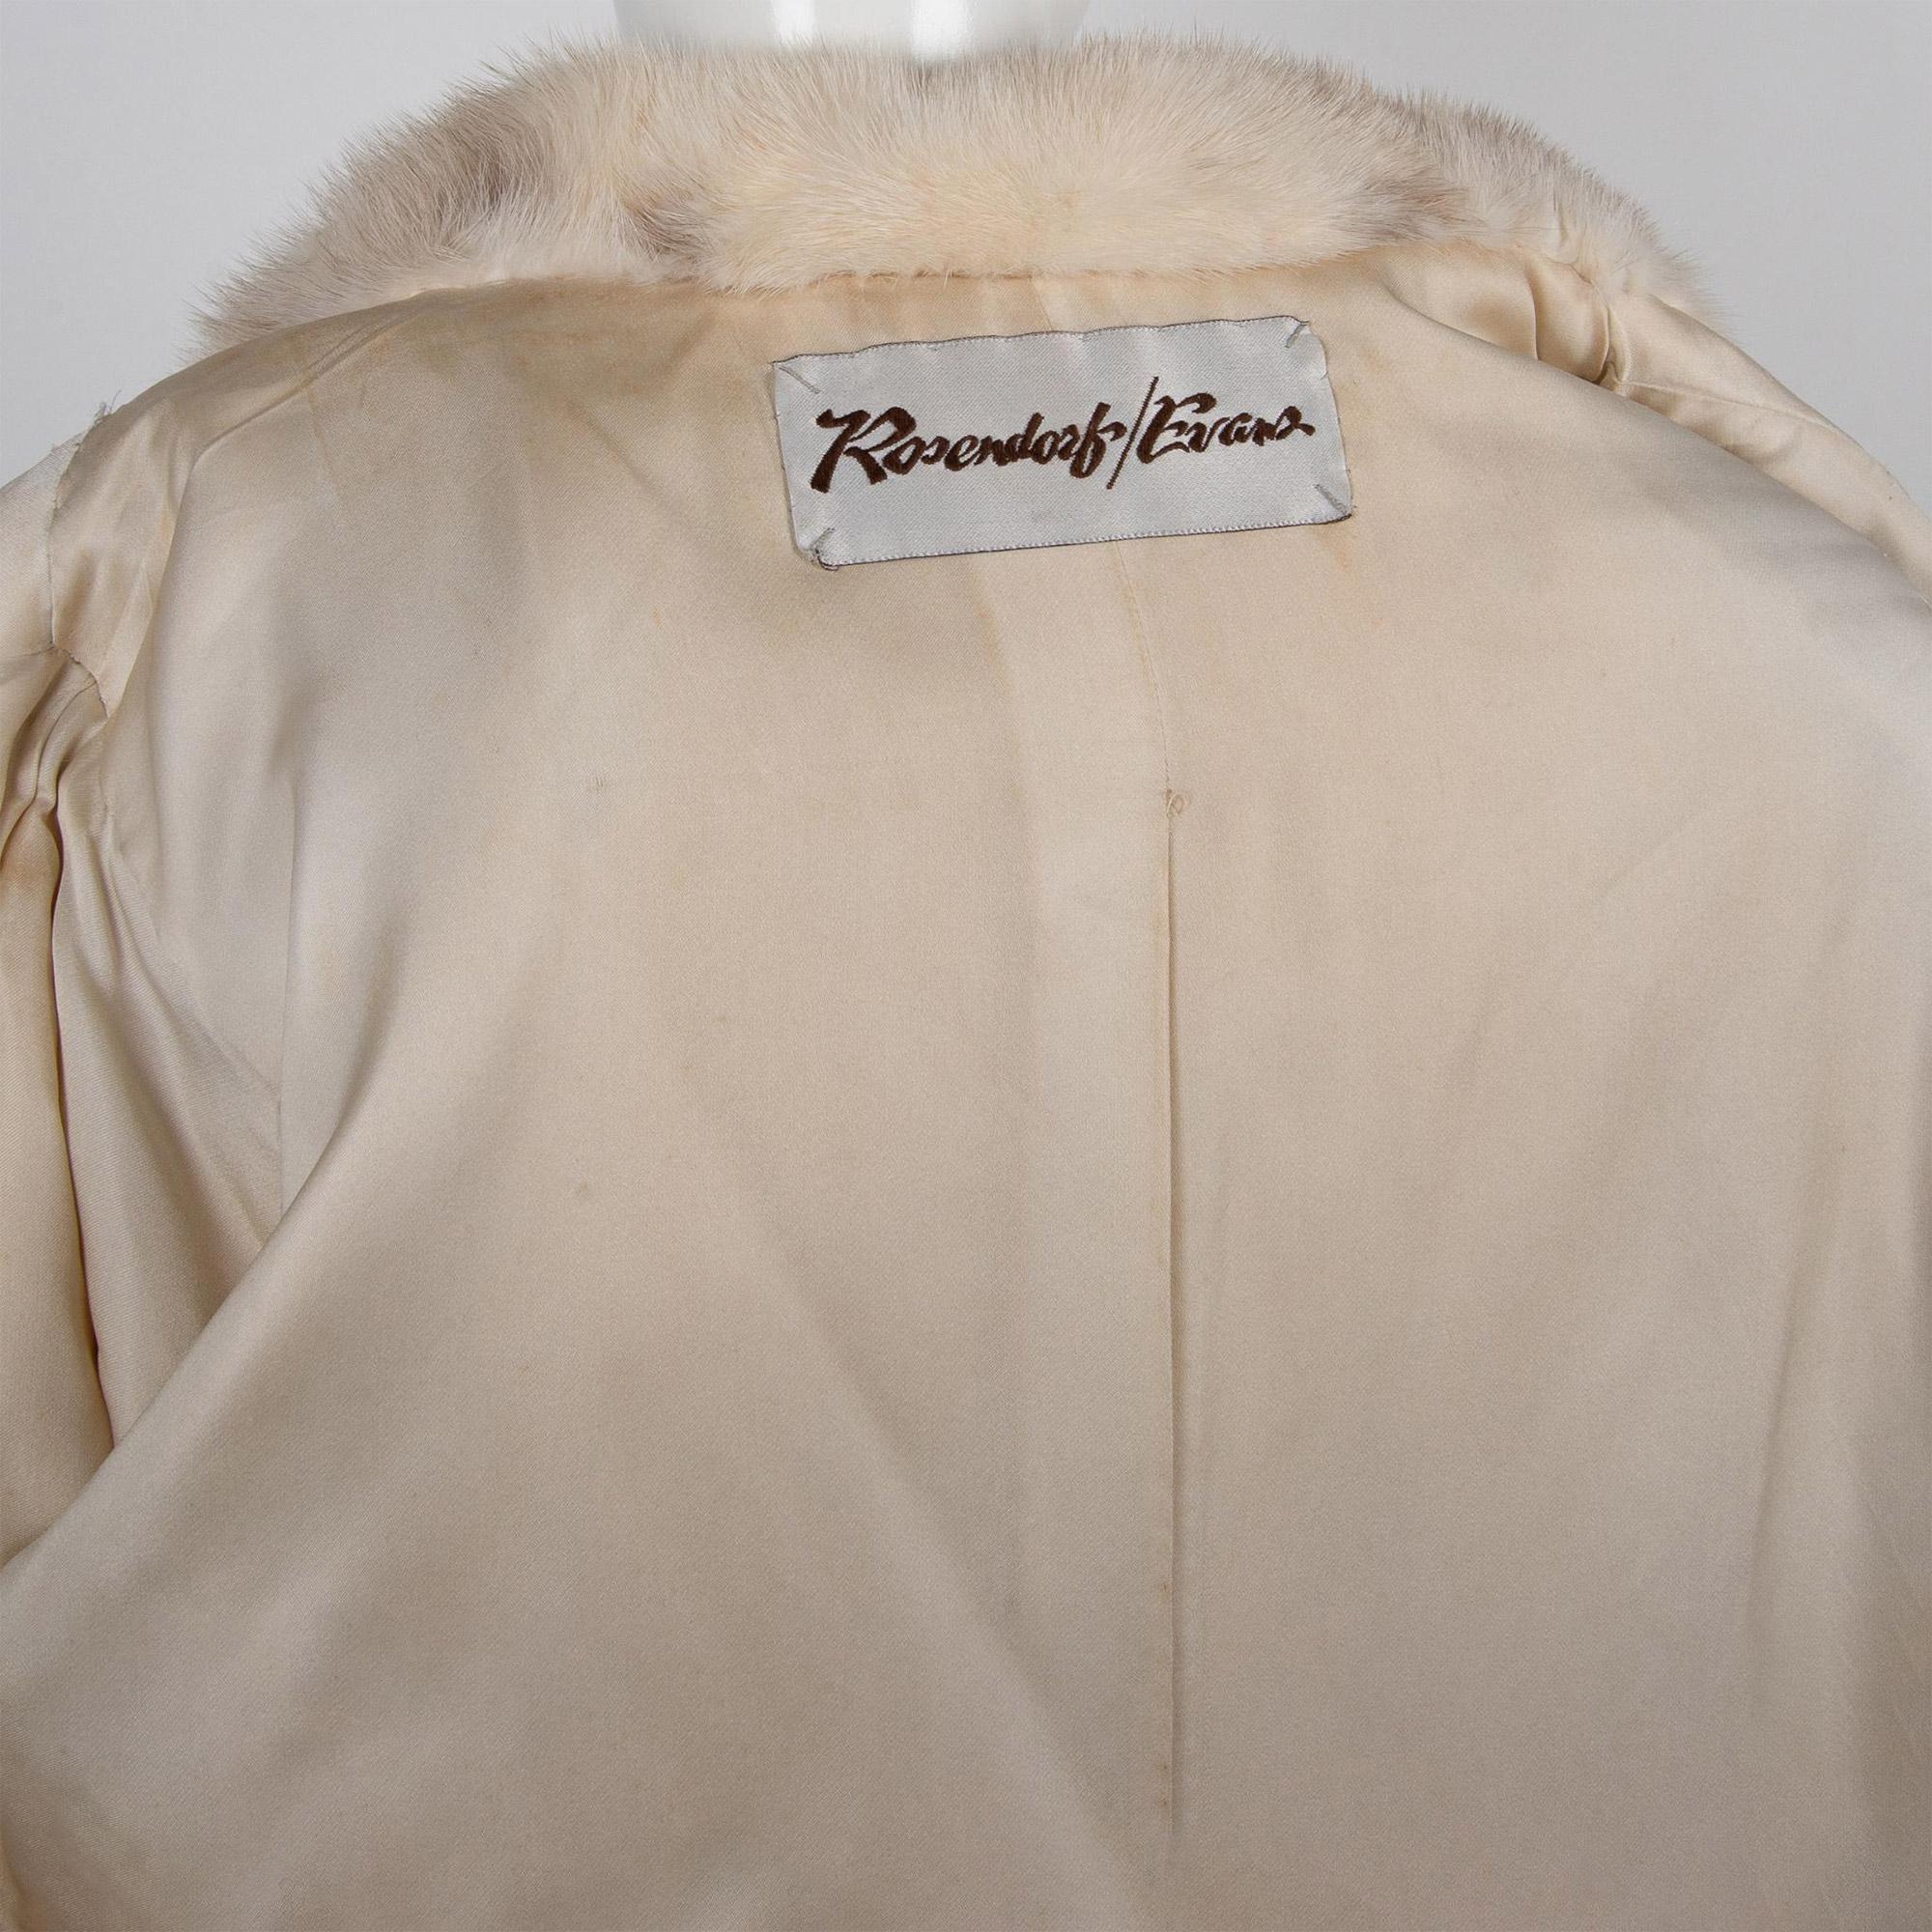 Vintage Rosendorf Evans Long Mink Fur Coat - Image 6 of 6